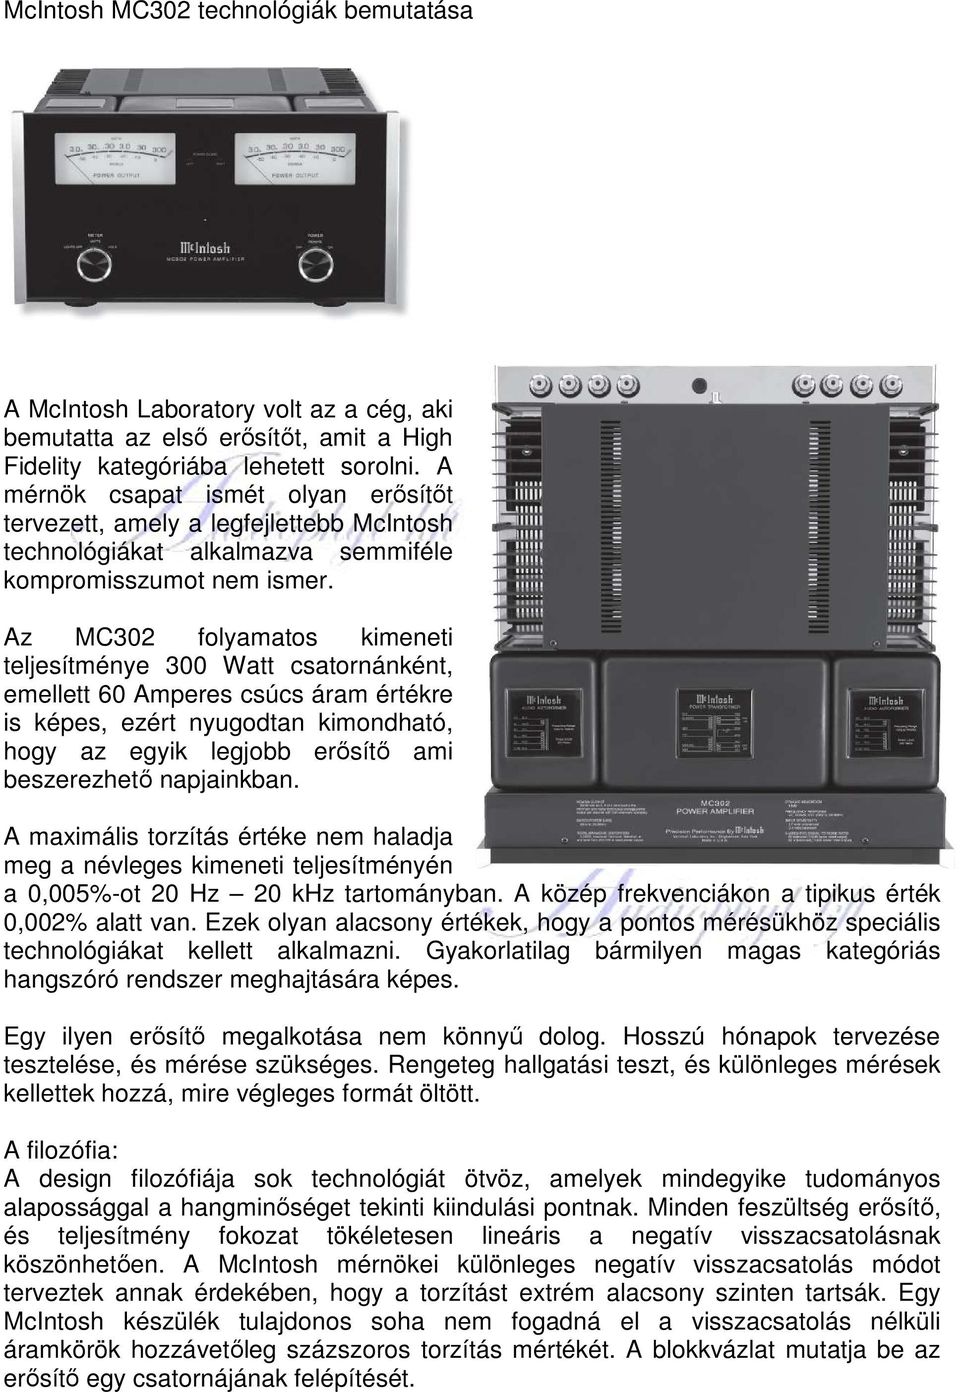 McIntosh MC302 technológiák bemutatása - PDF Ingyenes letöltés